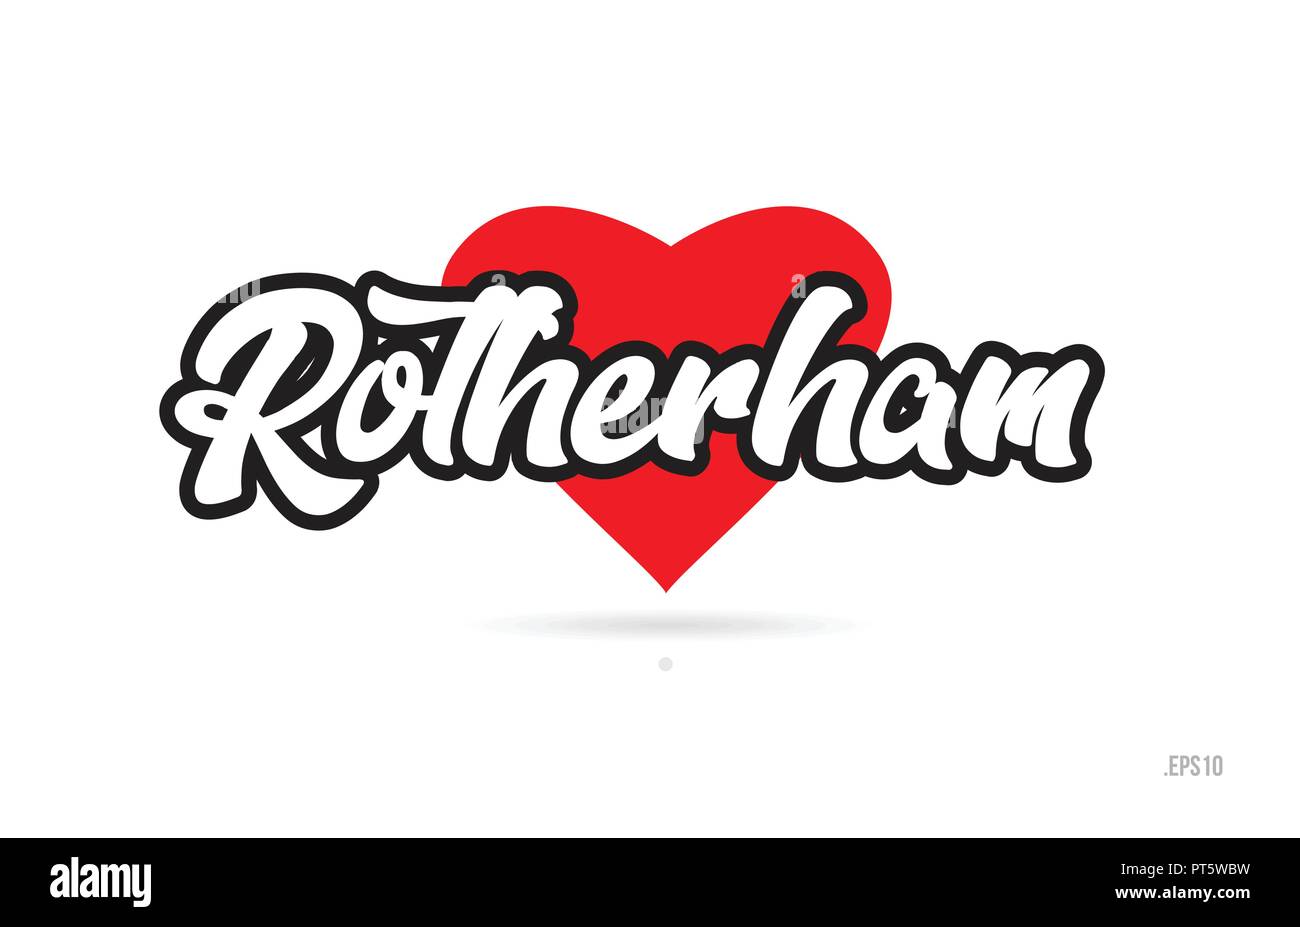 La ville de rotherham avec coeur rouge design texte icône typographique adapté à la conception de la promotion touristique Illustration de Vecteur